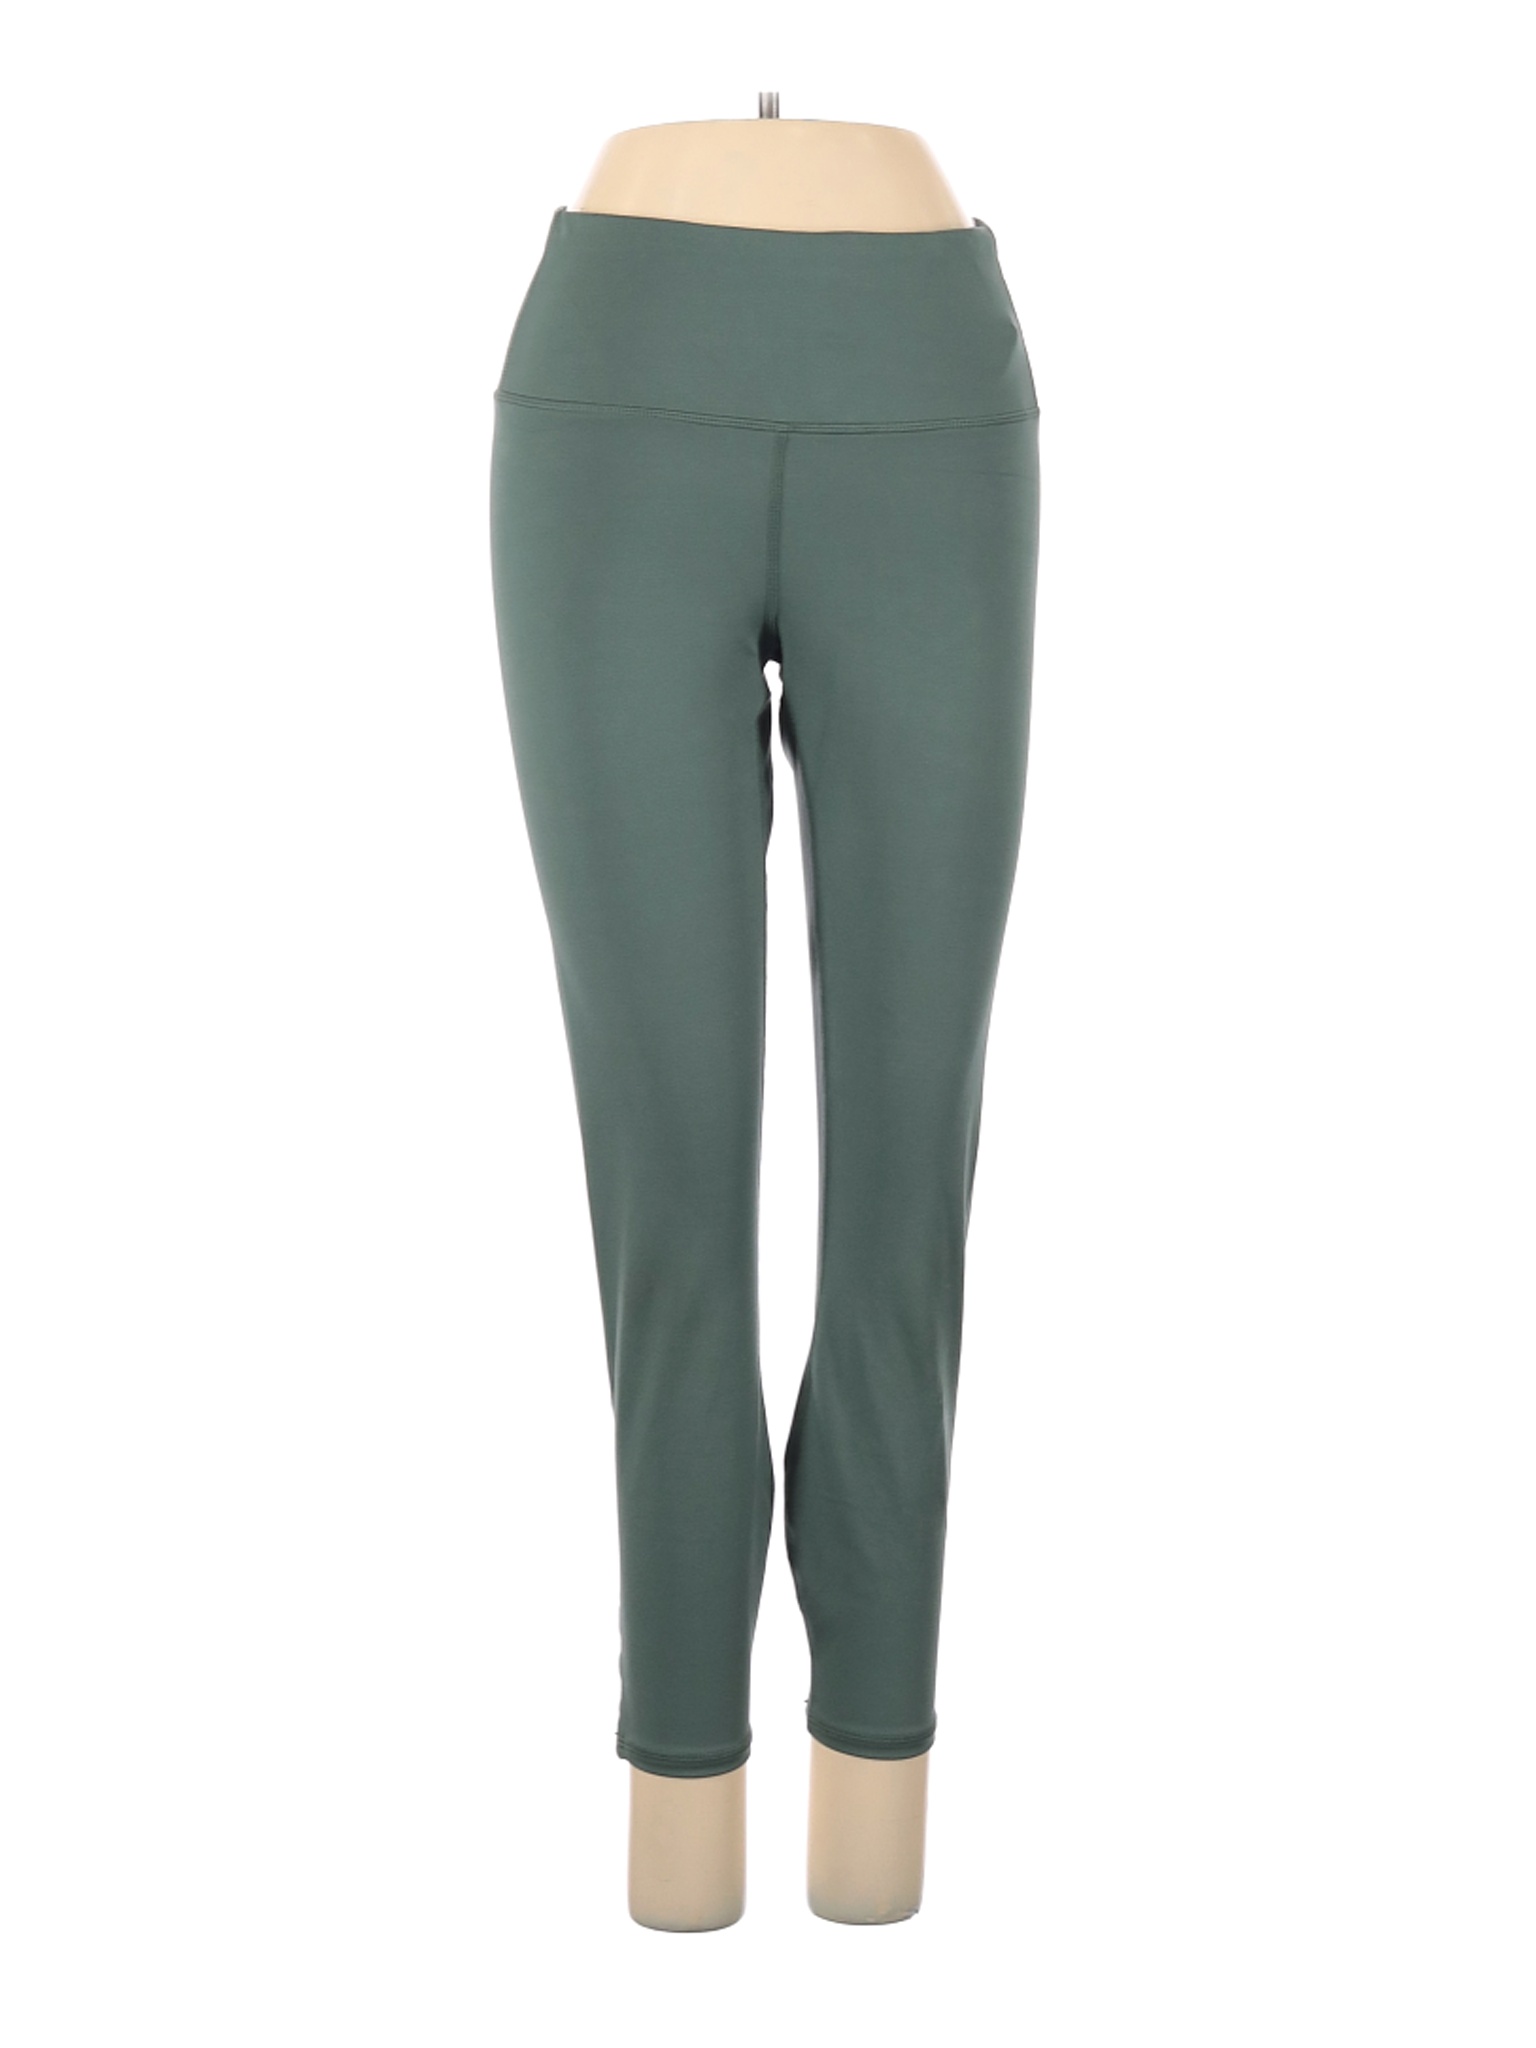 Active Life Women Green Active Pants S | eBay